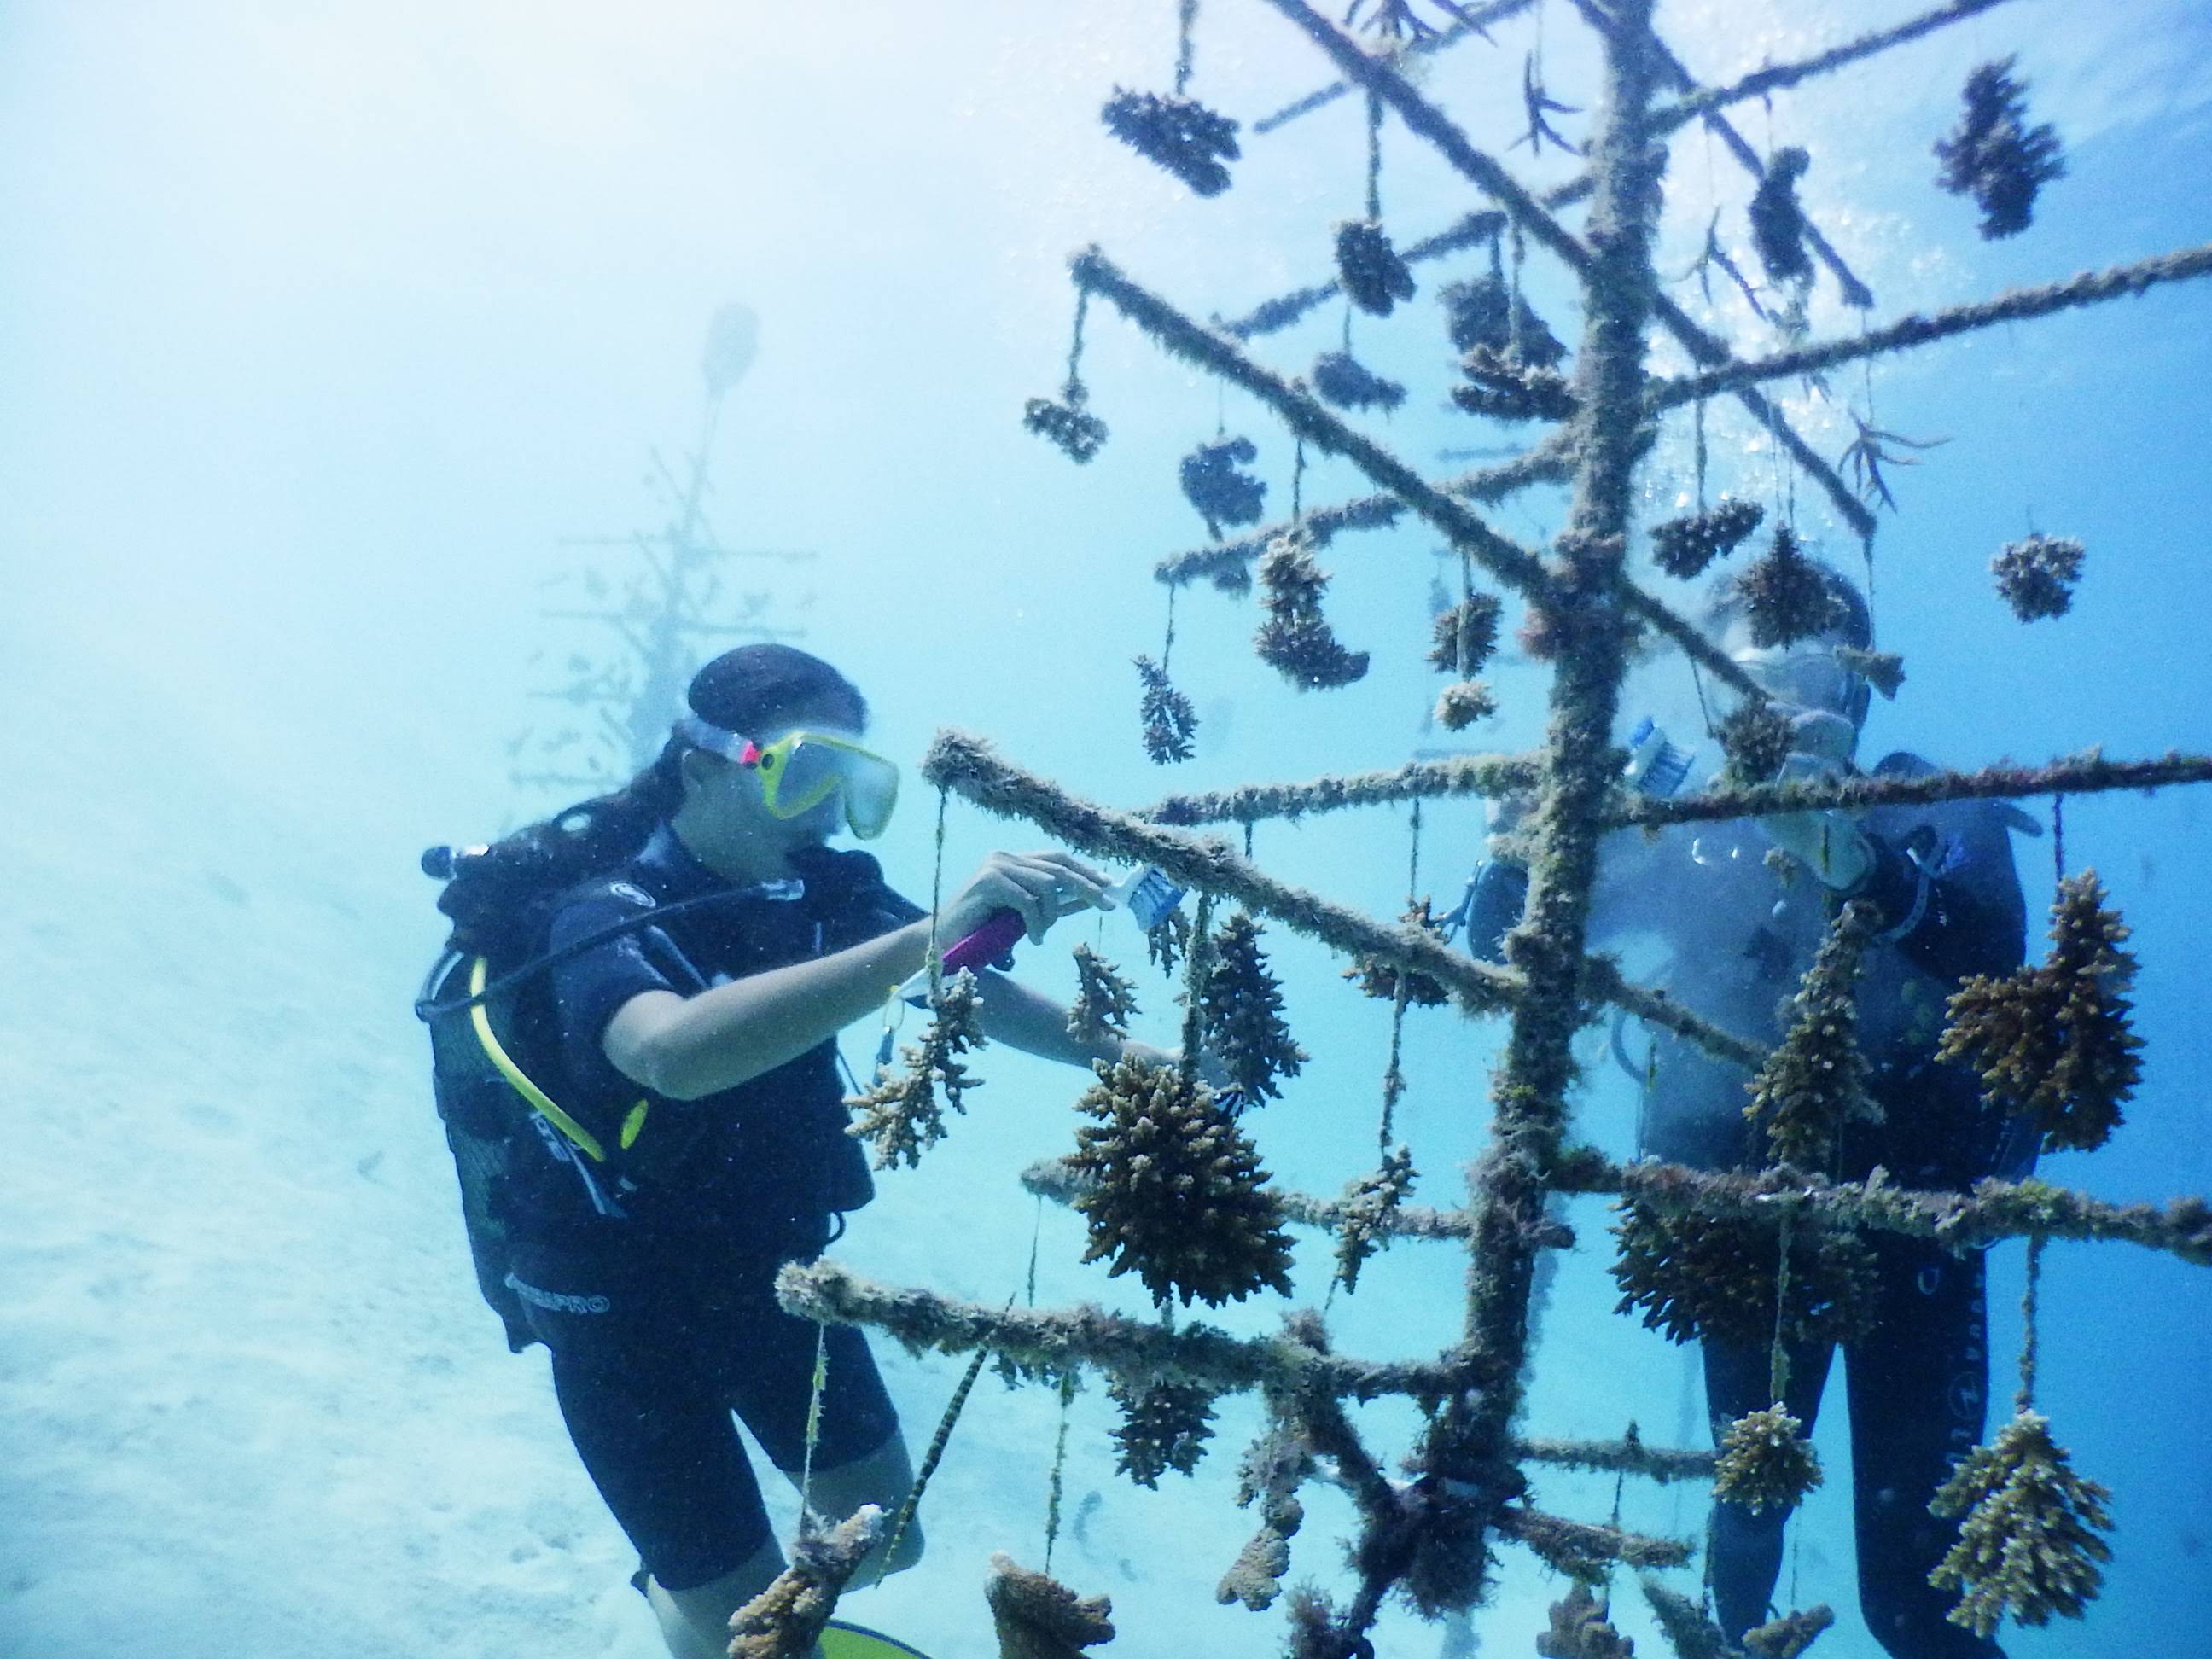 En partenariat avec le CRIOBE, Institut Polynésien de Biomimétisme développe des nurseries de corail plus respectueuses de l'environnement. Le biomimétisme permet de trouver de nouveaux design, de nouveaux matériaux et même de nouvelles fonctions contre le réchauffement climatique .